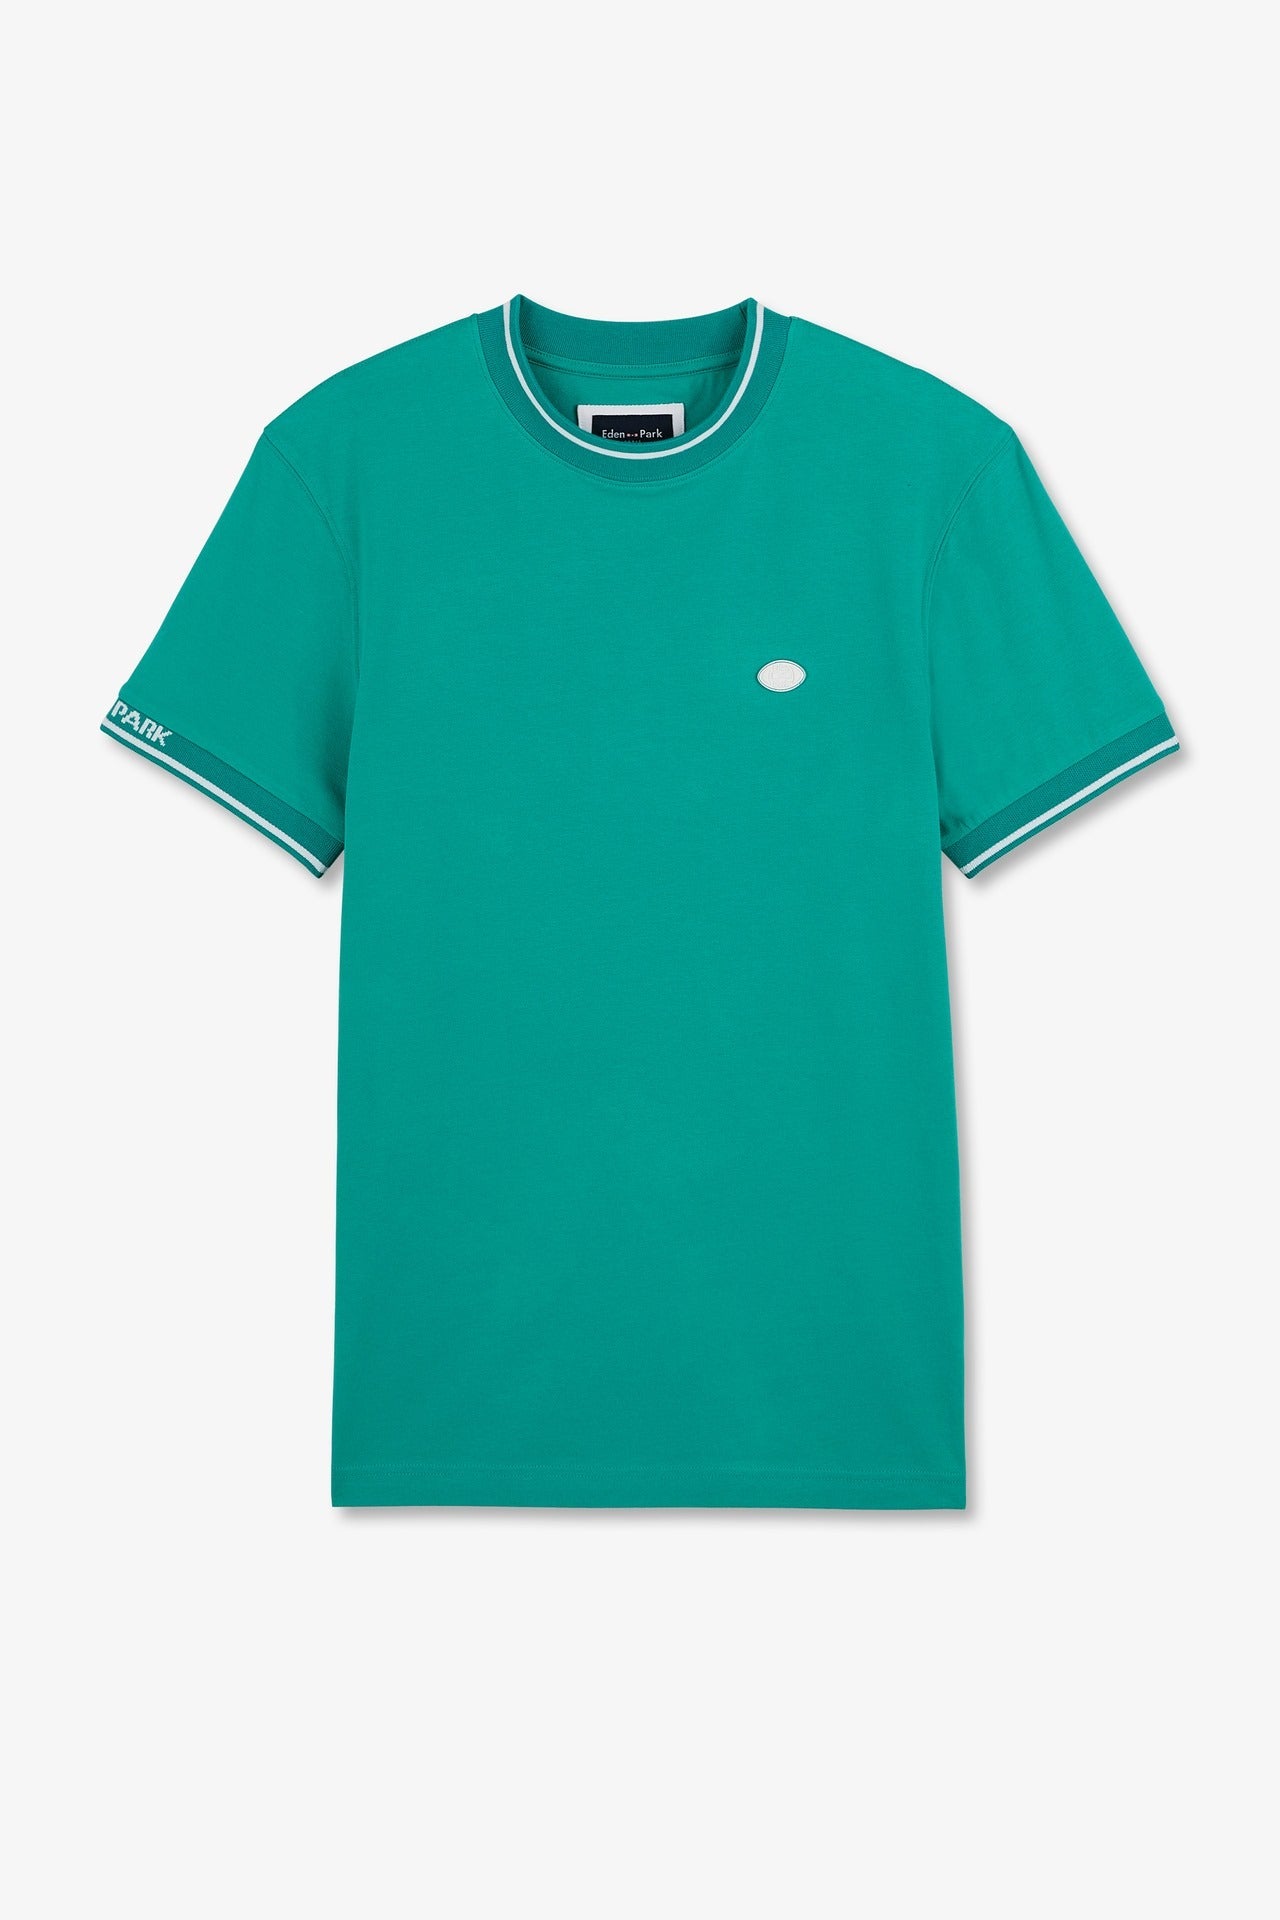 T-shirt vert à manches courtes - Image 2